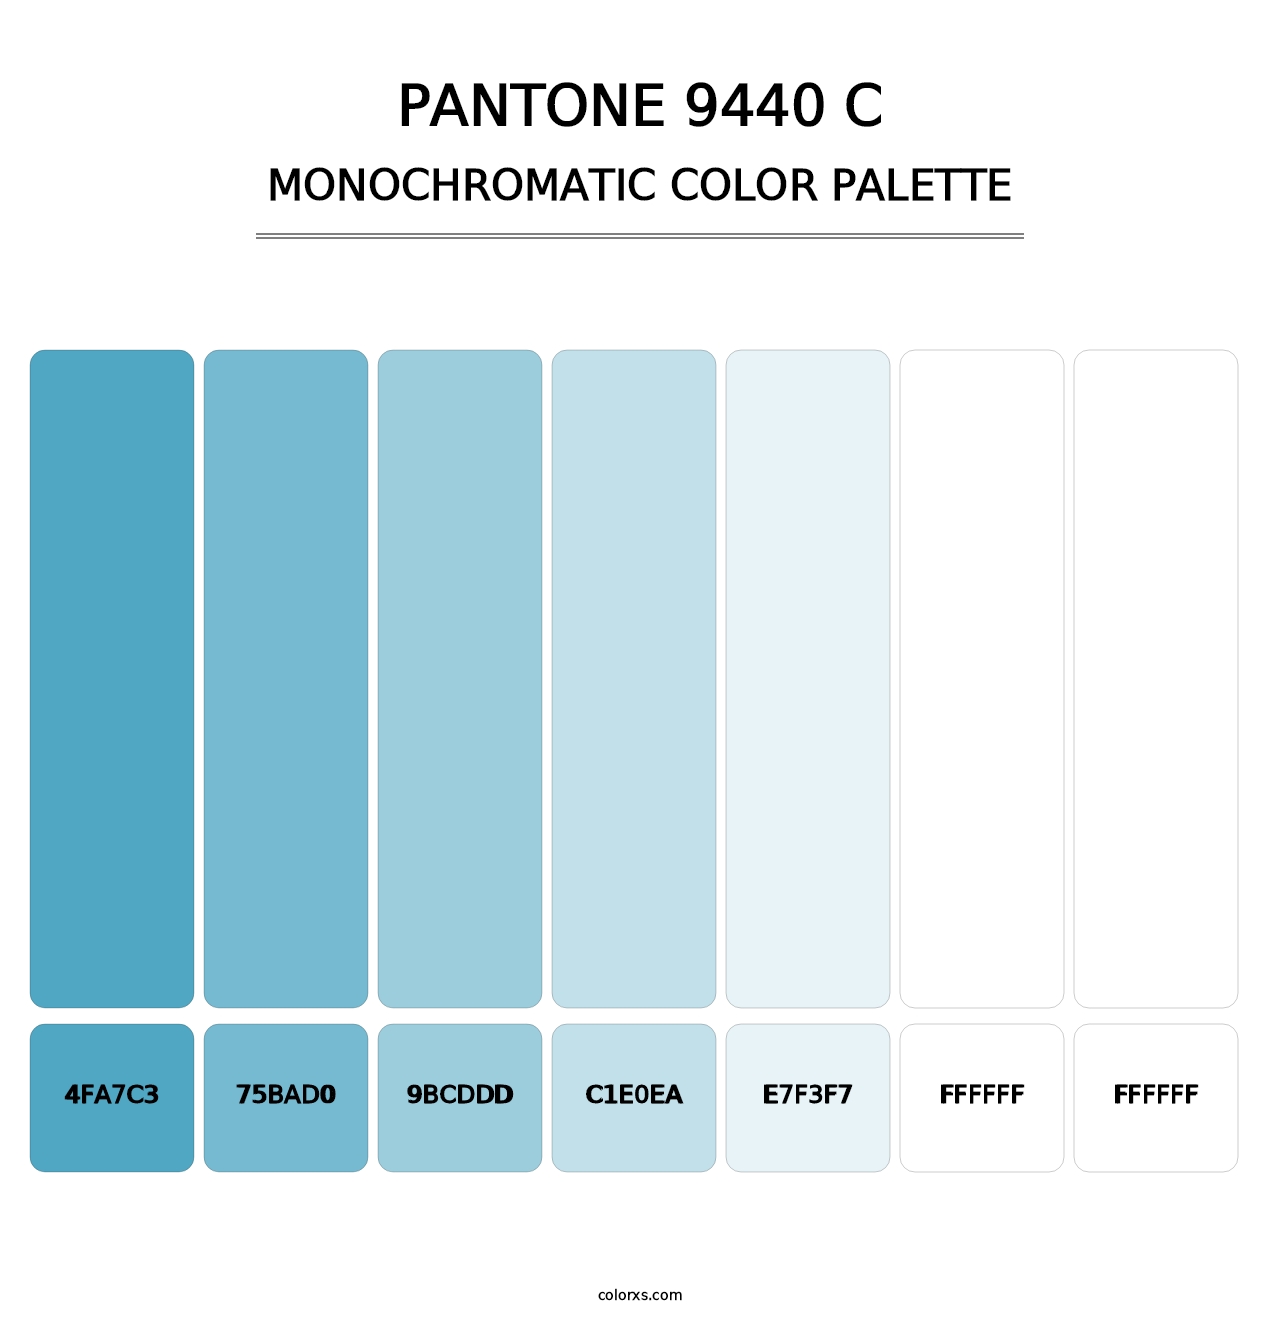 PANTONE 9440 C - Monochromatic Color Palette